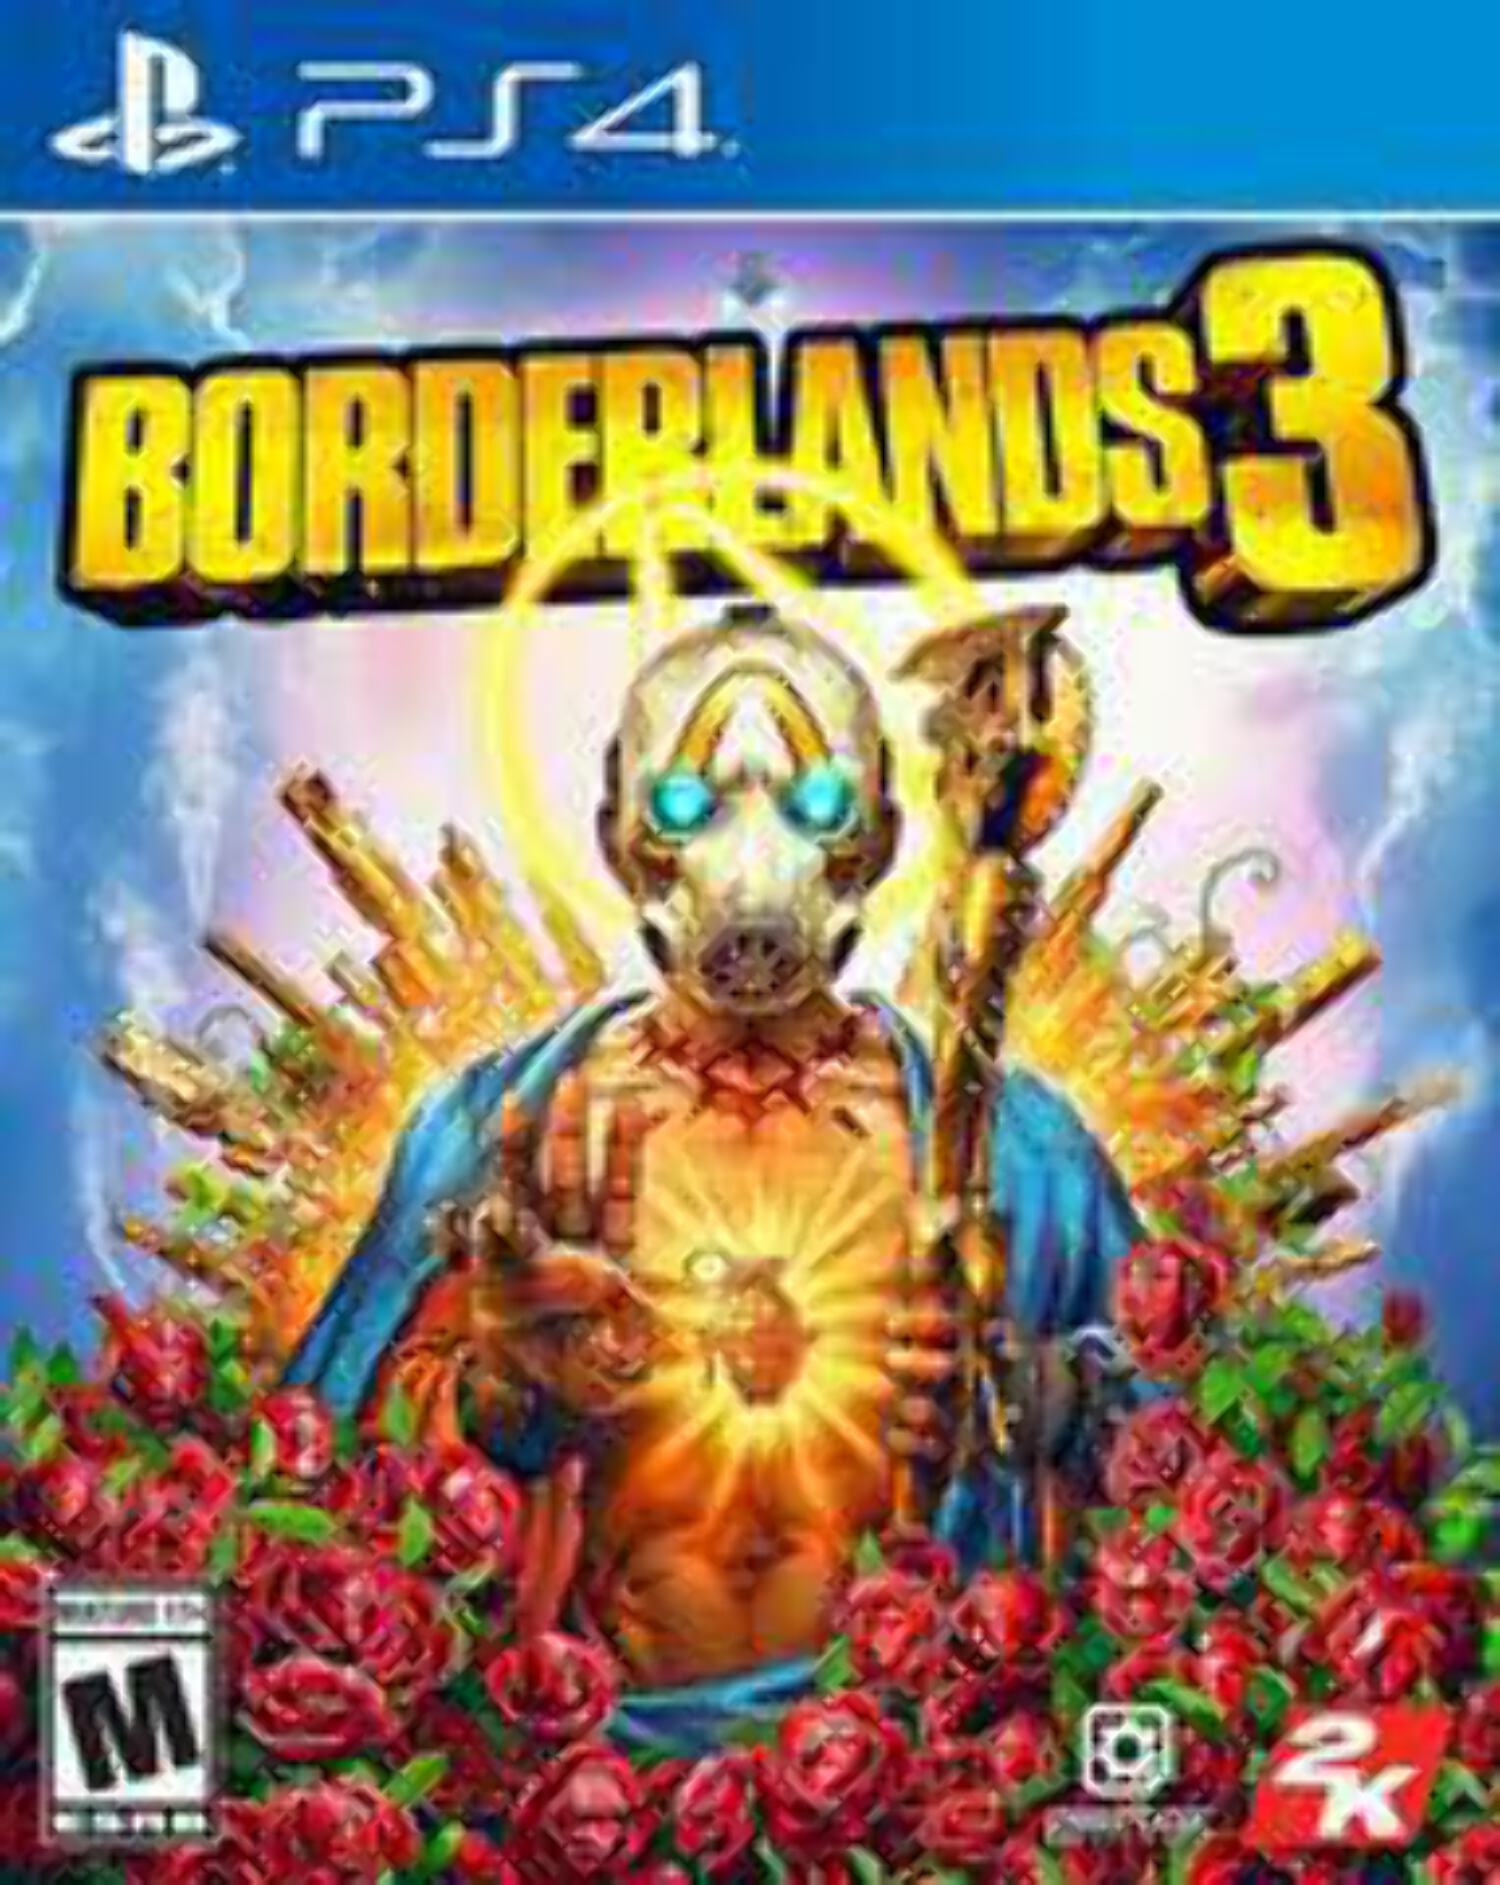 Borderlands 3, 2K, PlayStation 4, 0710425574931 - image 1 of 15